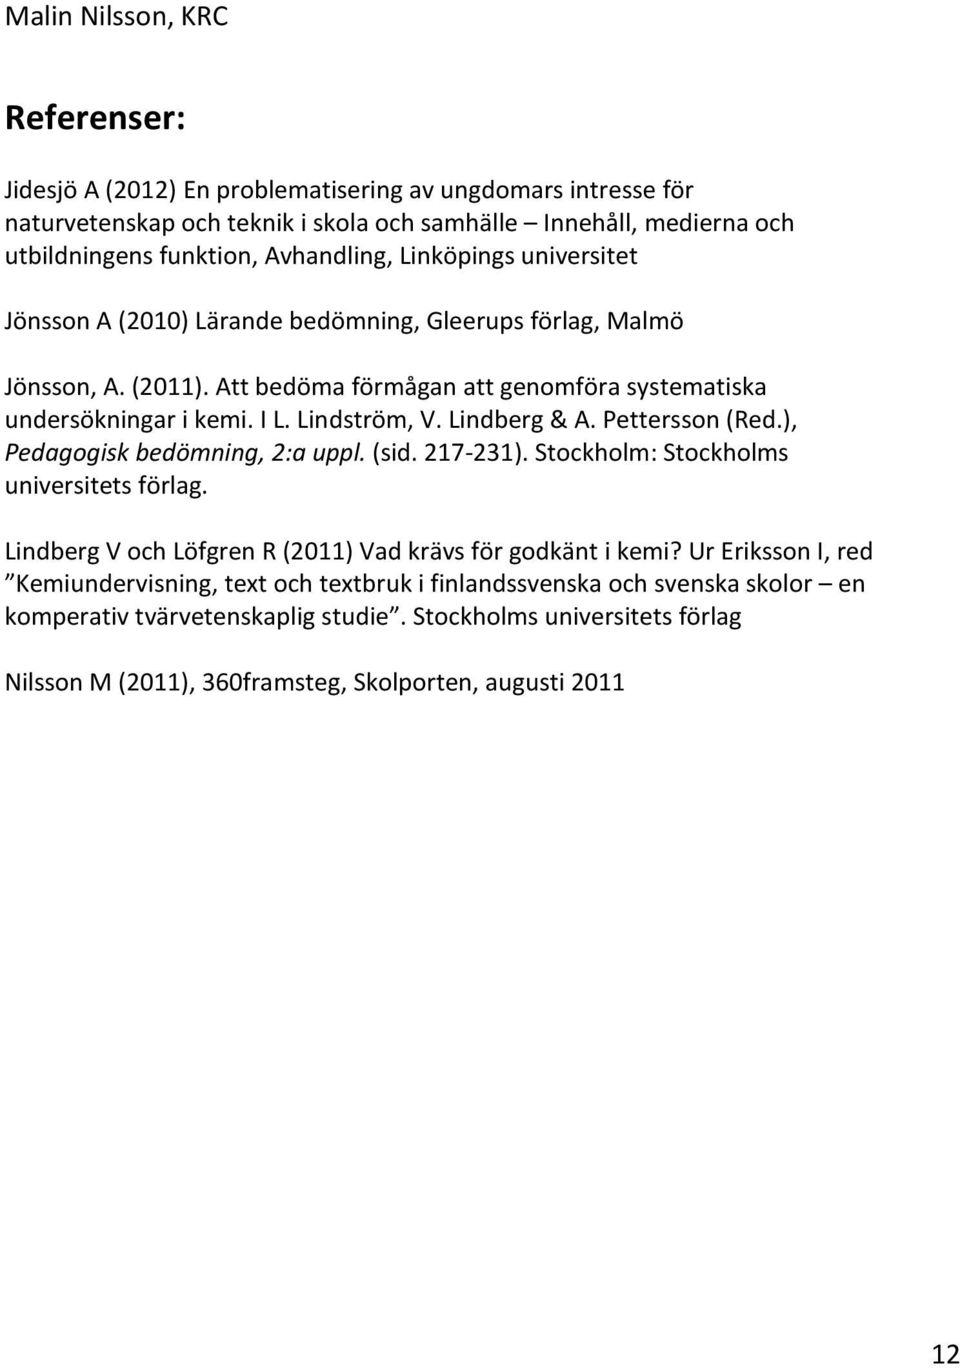 Pettersson (Red.), Pedagogisk bedömning, 2:a uppl. (sid. 217-231). Stockholm: Stockholms universitets förlag. Lindberg V och Löfgren R (2011) Vad krävs för godkänt i kemi?